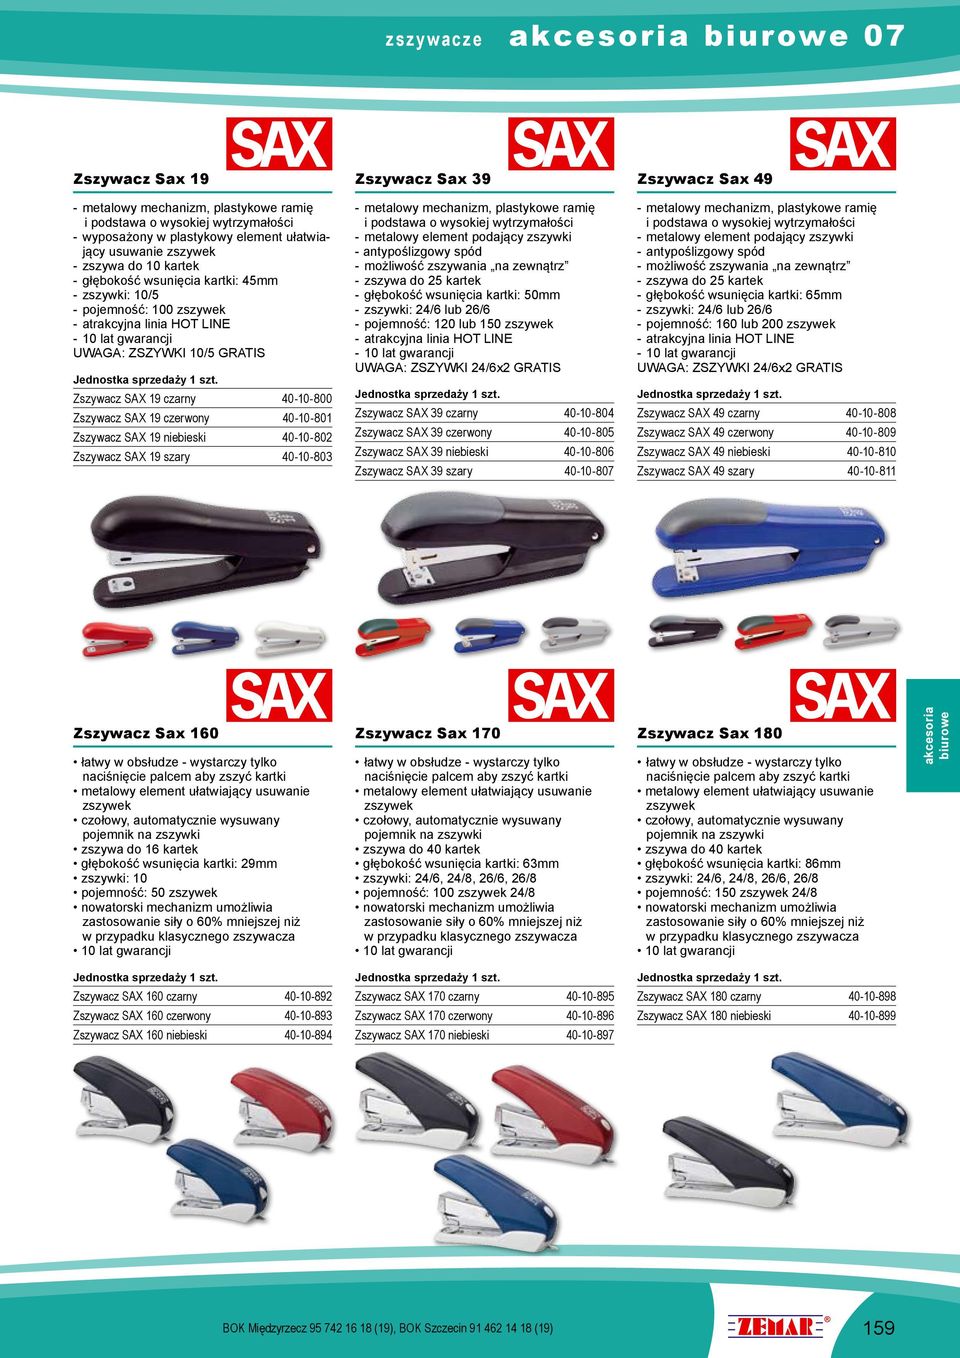 40-10-800 Zszywacz SAX 19 czerwony 40-10-801 Zszywacz SAX 19 niebieski 40-10-802 Zszywacz SAX 19 szary 40-10-803 - metalowy mechanizm, plastykowe ramię i podstawa o wysokiej wytrzymałości - metalowy